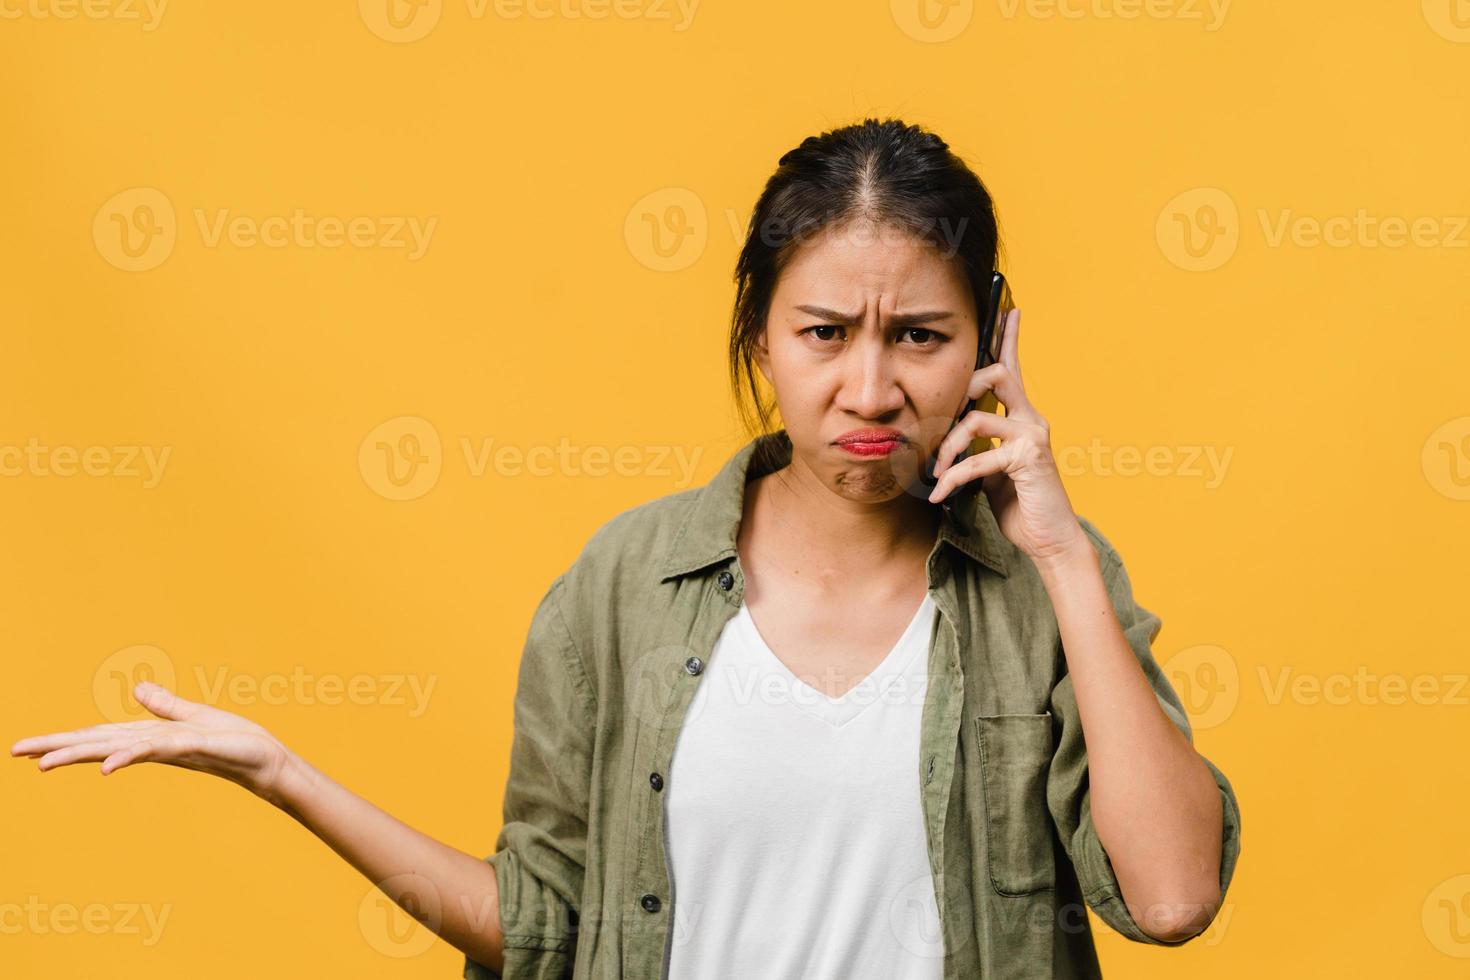 une jeune femme asiatique parle par téléphone avec une expression négative, des cris excités, des cris émotionnels en colère dans un tissu décontracté et se tient isolée sur fond jaune avec un espace de copie vierge. concept d'expression faciale. photo